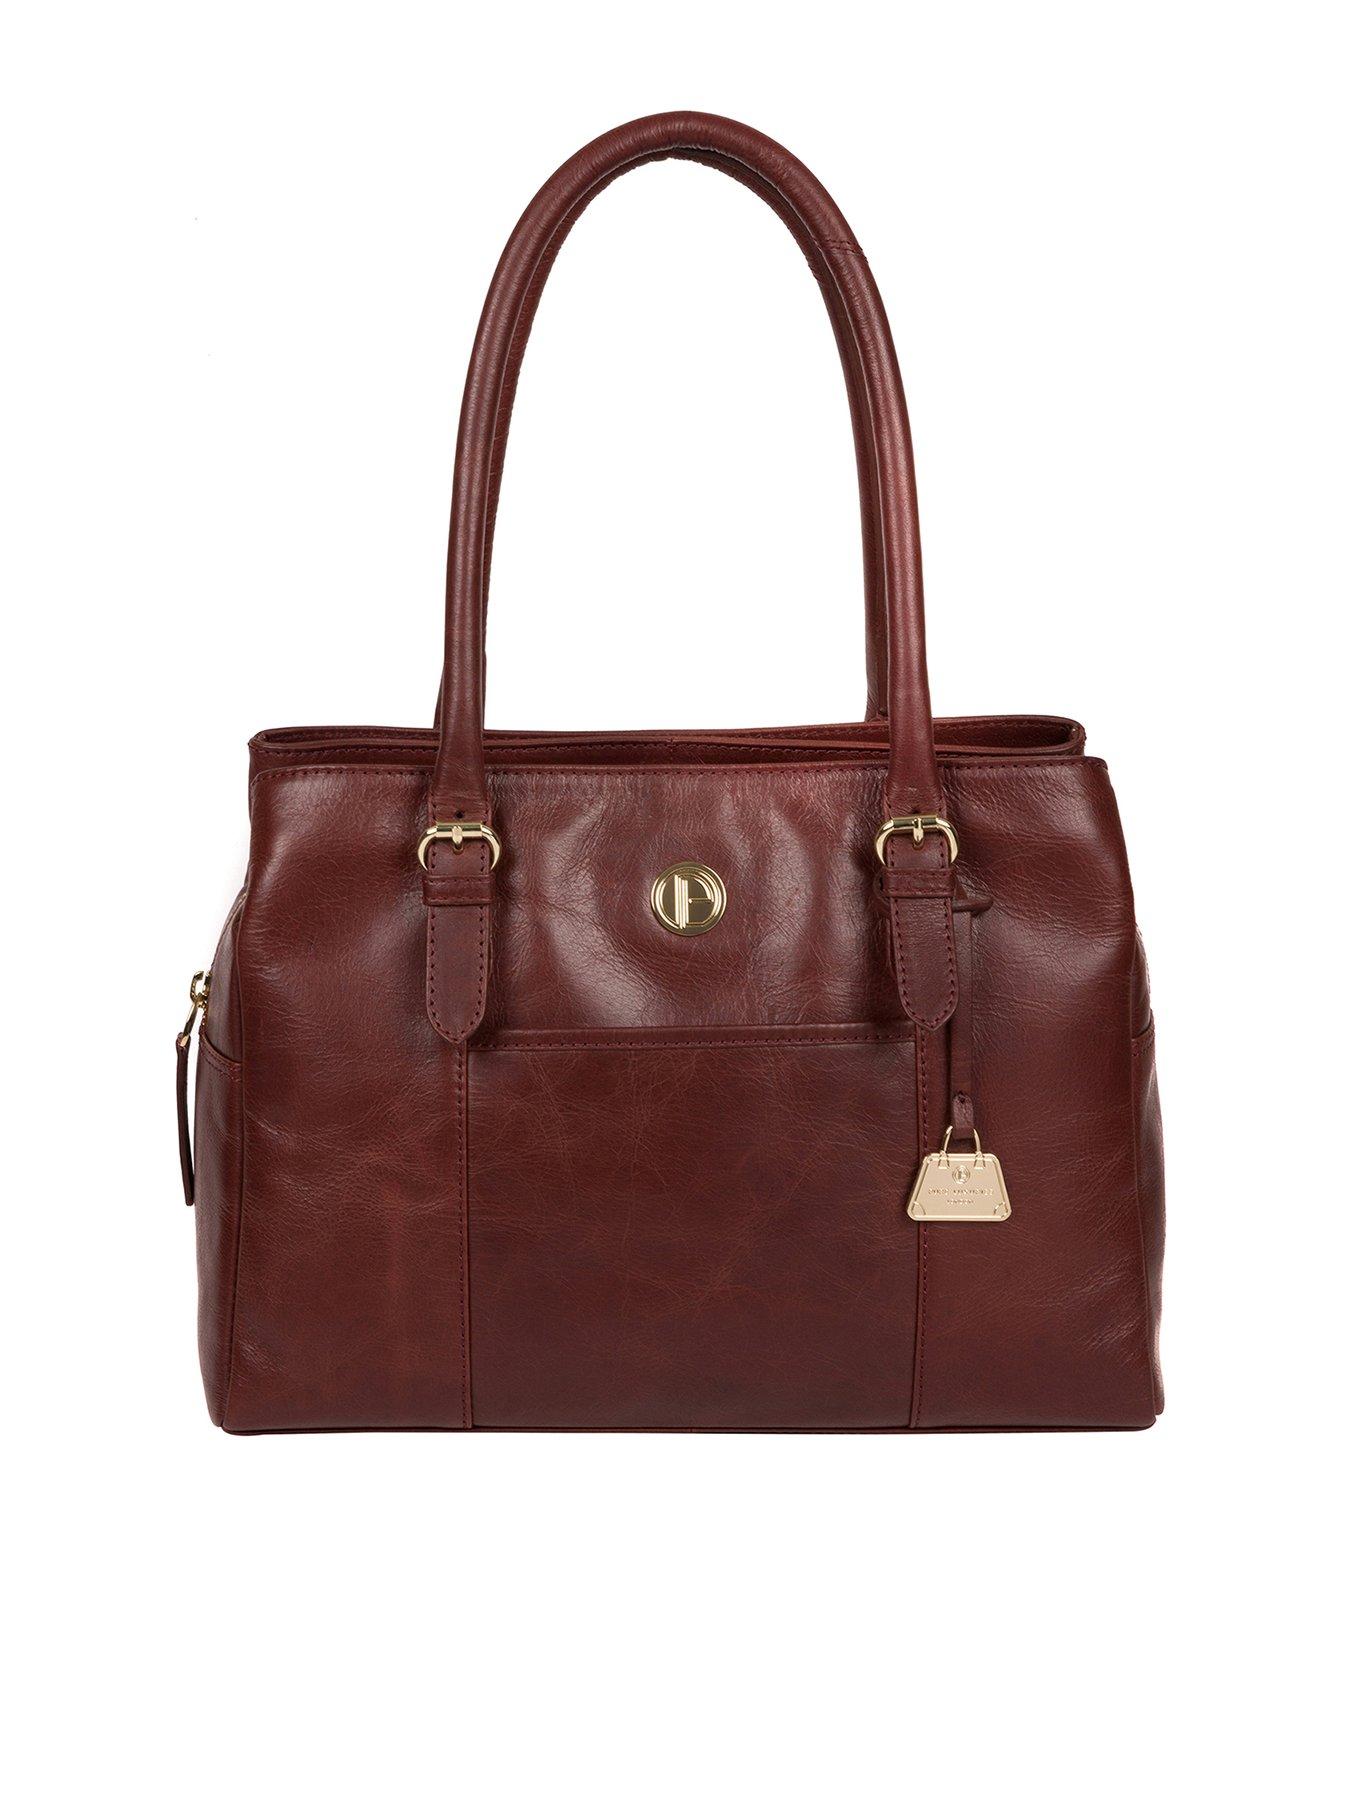 Bags & Purses Fleur Leather Zip Top Handbag - Chestnut